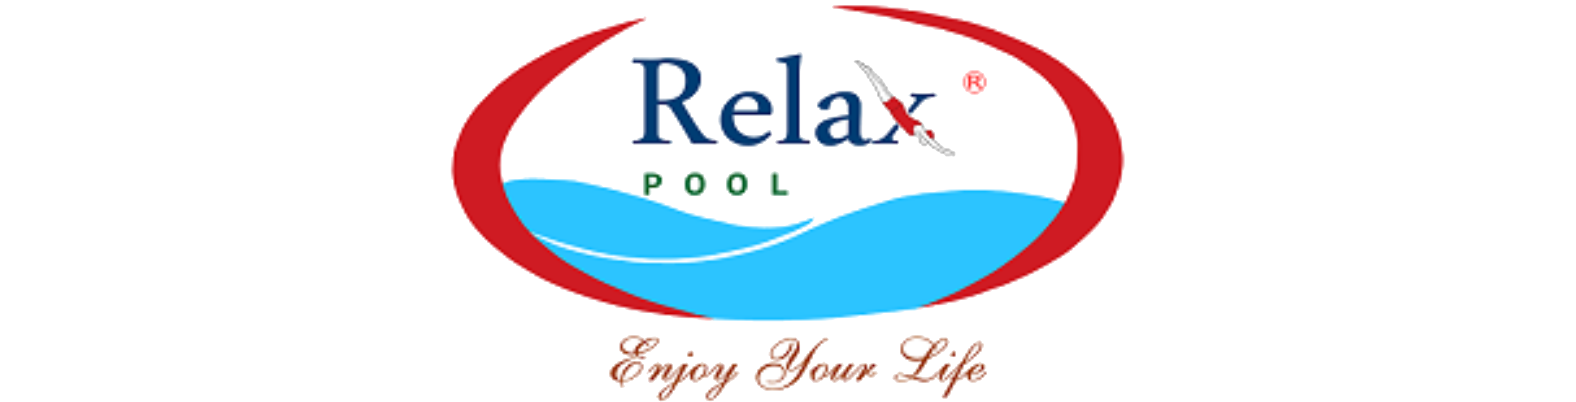 Thi Công Xây Dựng Hồ Bơi (Bể Bơi) Trọn Gói - Uy Tín | RelaxPool